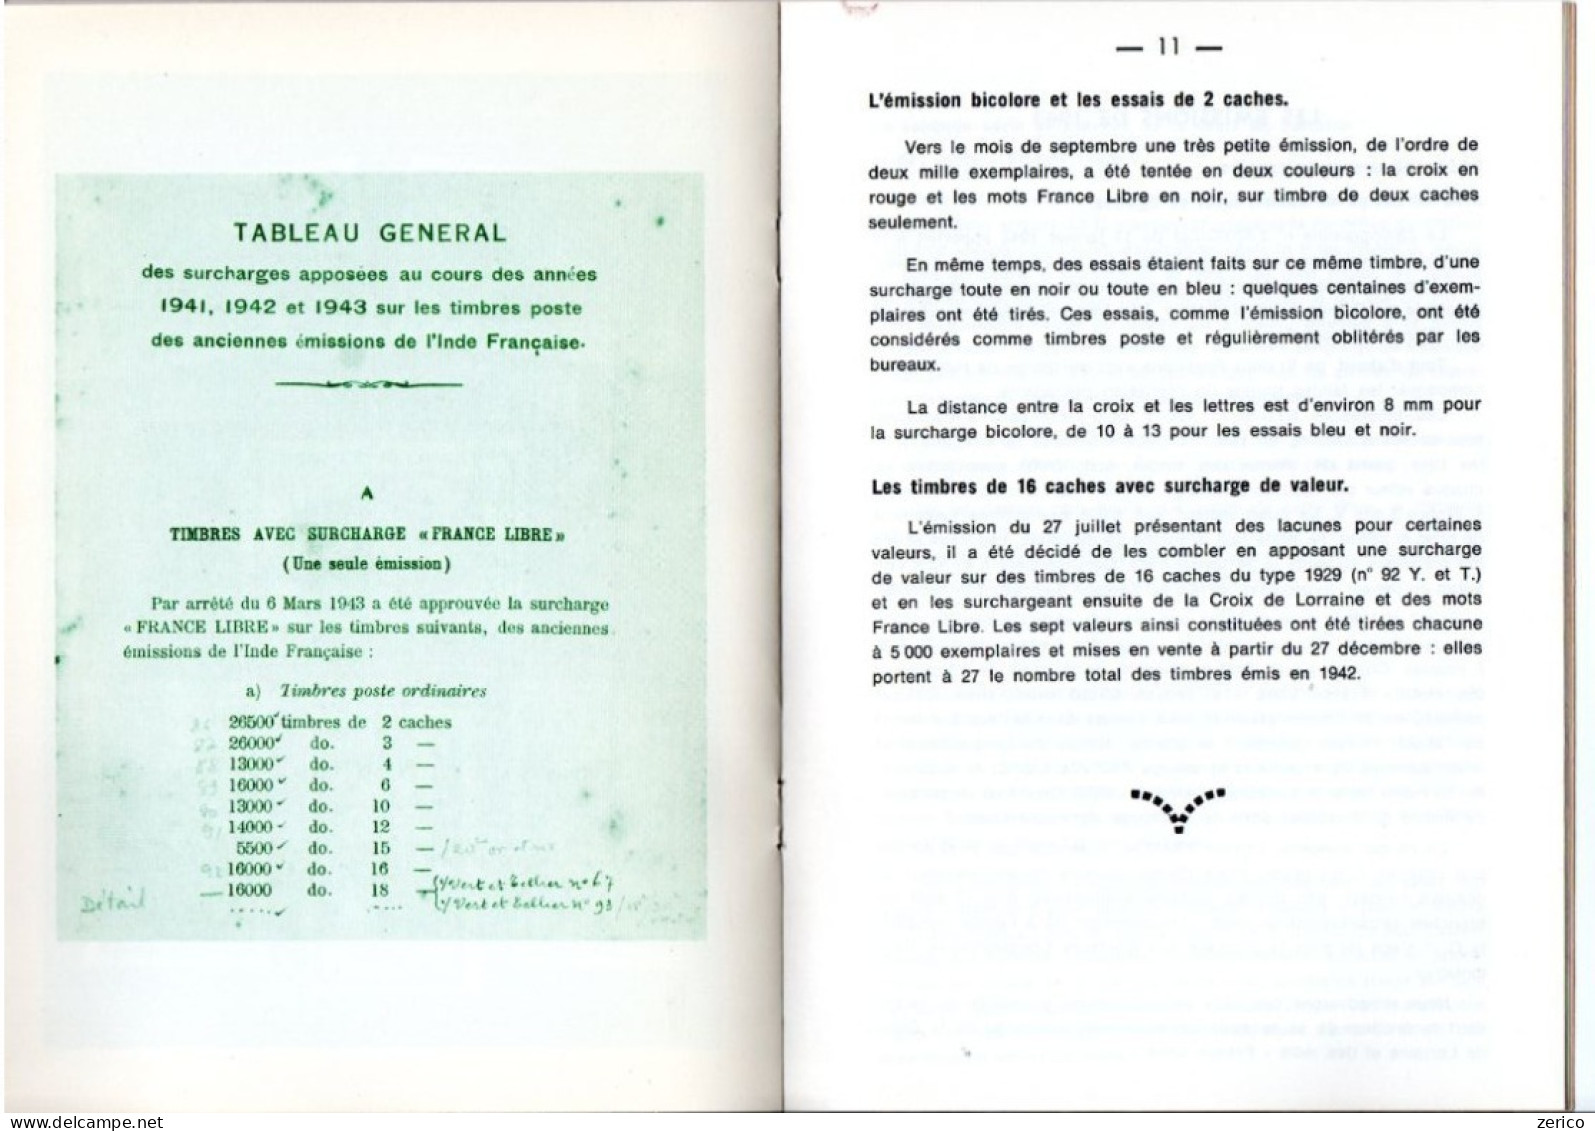 LES SURCHARGES "FRANCE LIBRE" Dans Les Ets Français En Inde 1941-45; 22 Pages; Edition 1984 - Gebruikt